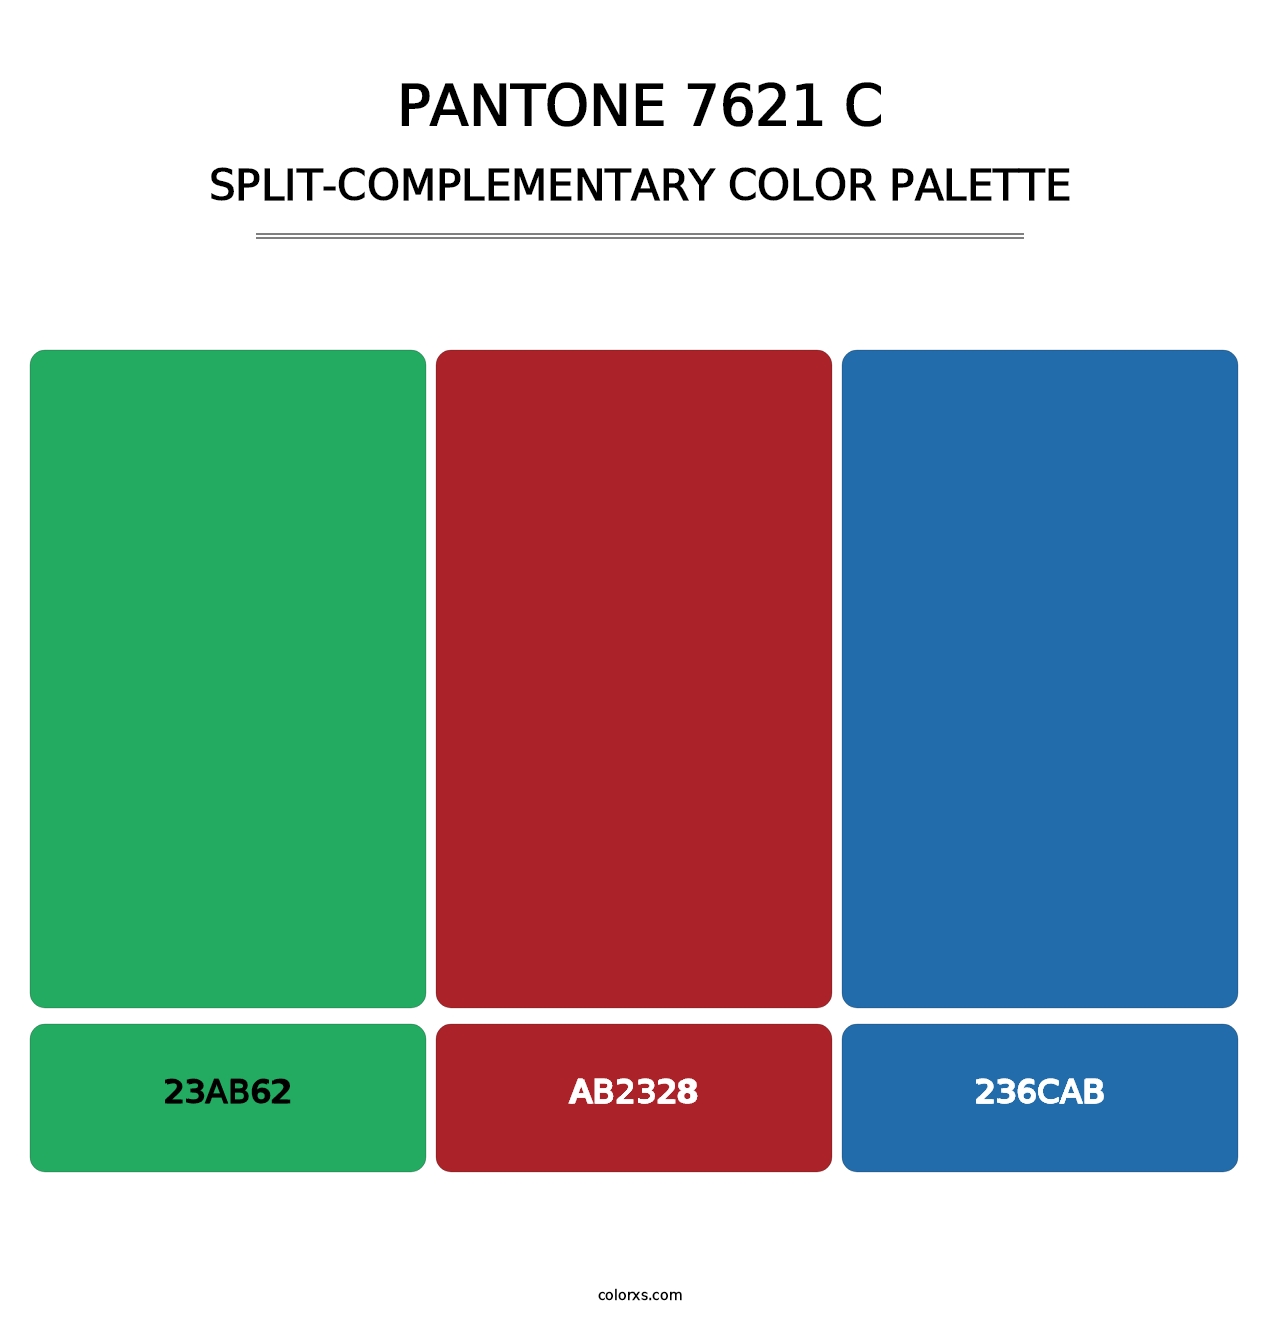 PANTONE 7621 C - Split-Complementary Color Palette